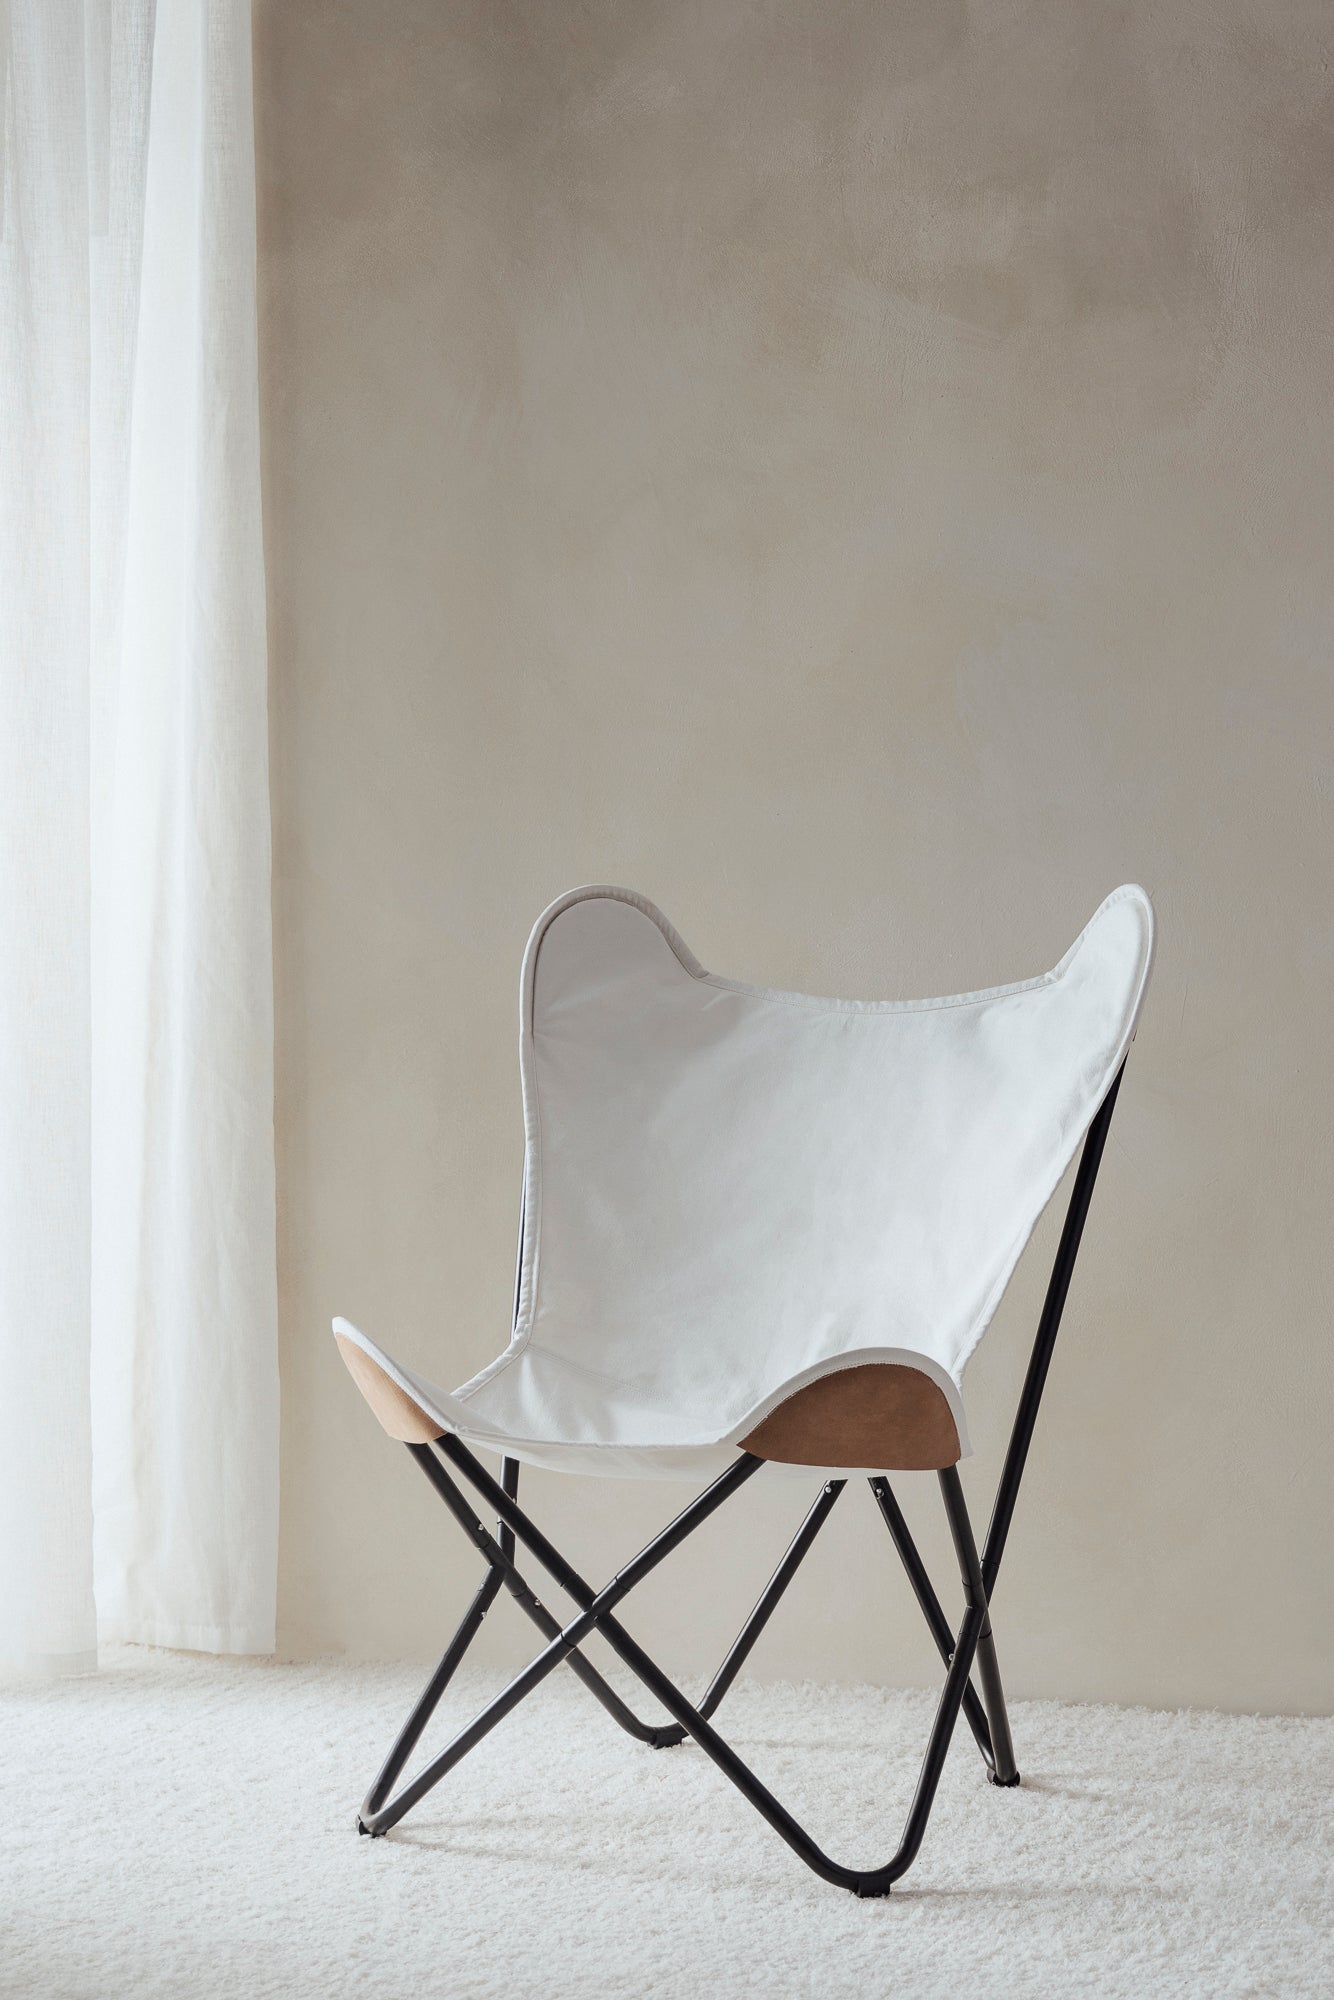 Chaise en toile blanche avec coins en cuir